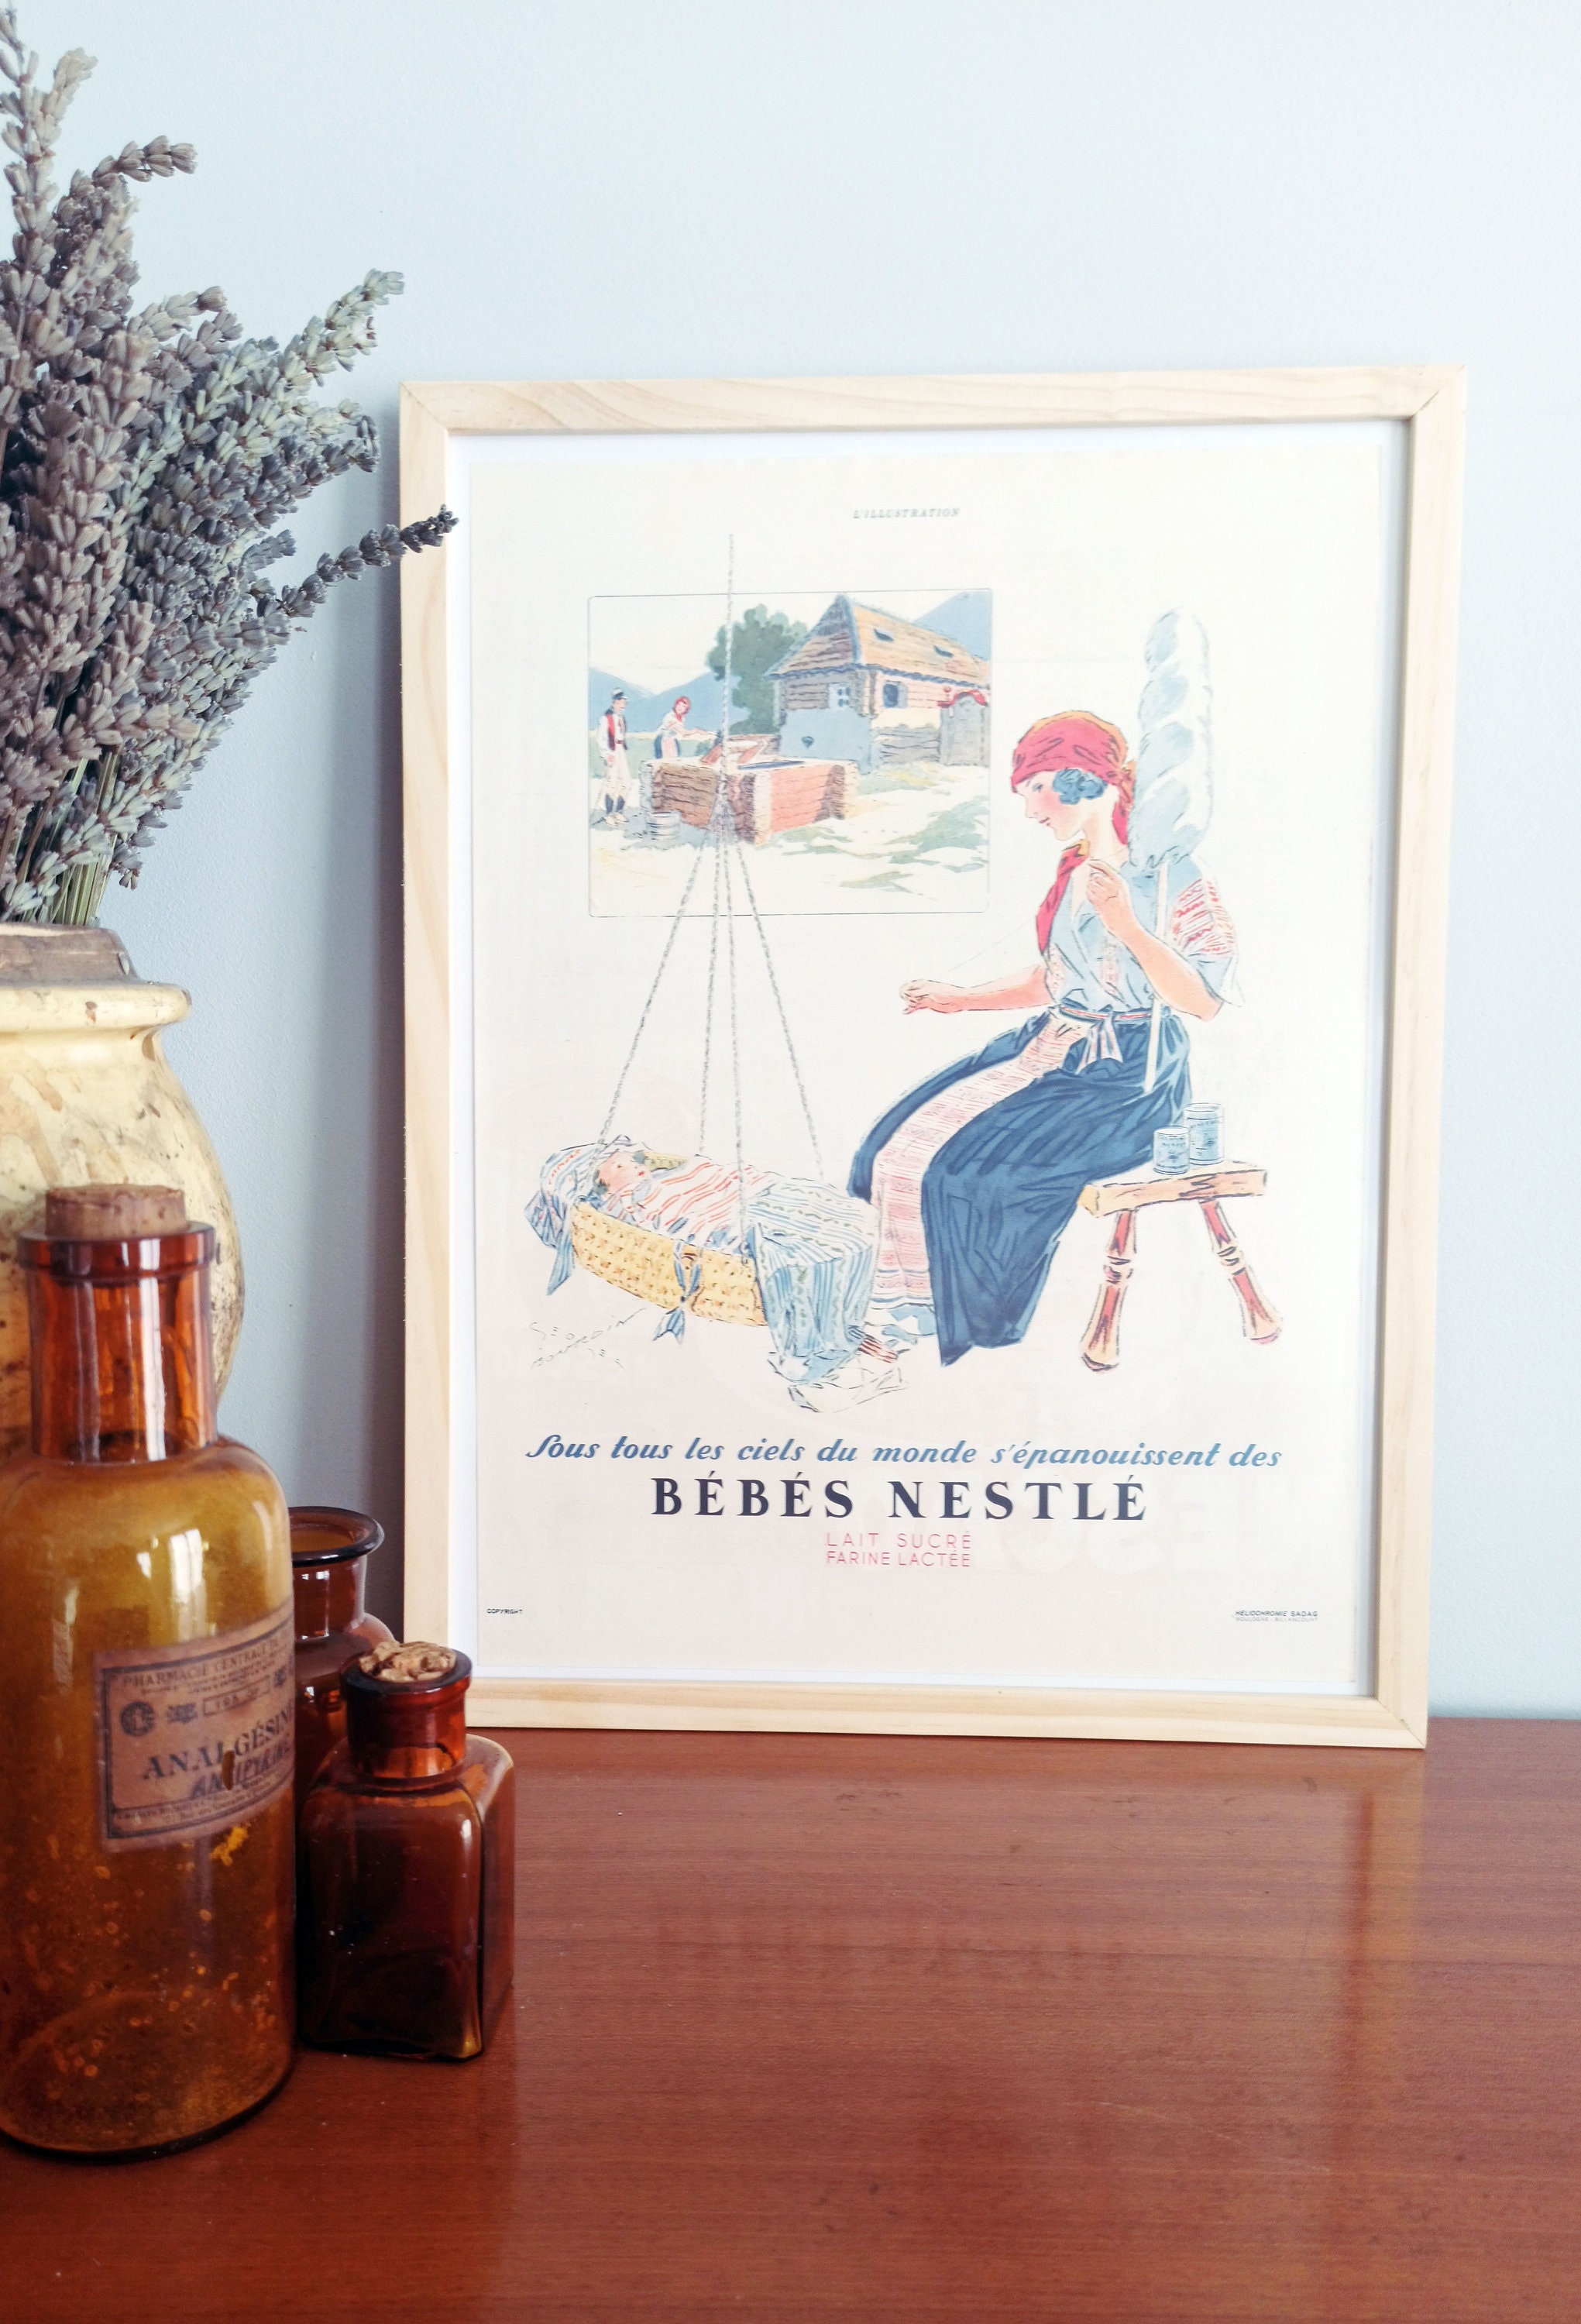 Rare & Authentique Affiche Vintage Années 30 - Bébé Nestlé -30x40cm Sans Cadre Décoration Murale Idé